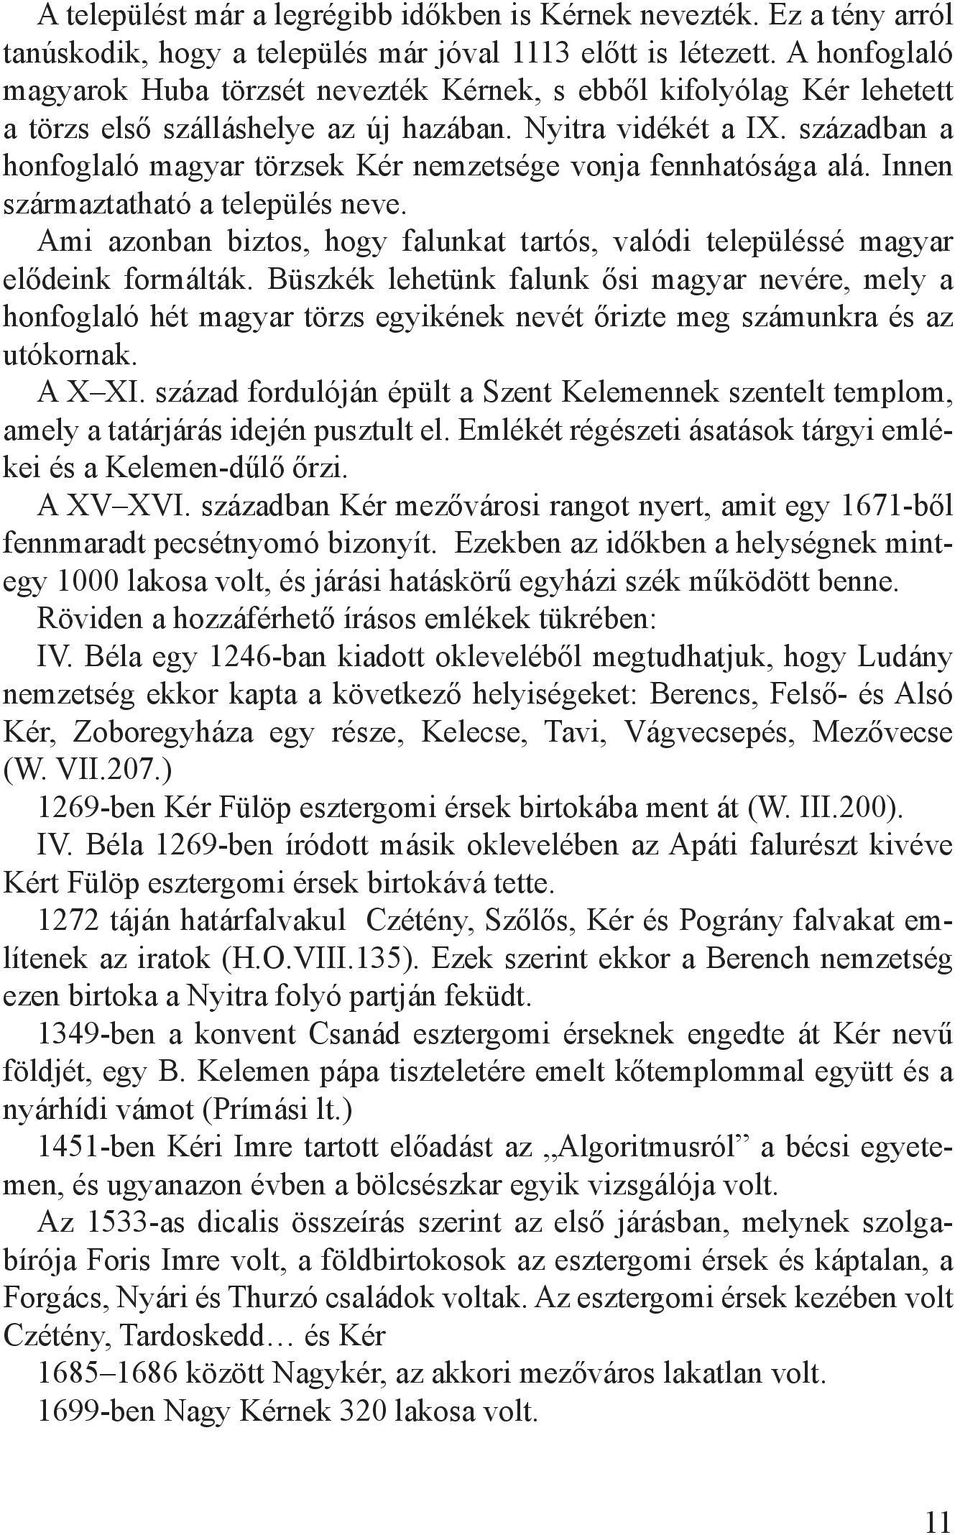 században a honfoglaló magyar törzsek Kér nemzetsége vonja fennhatósága alá. Innen származtatható a település neve.